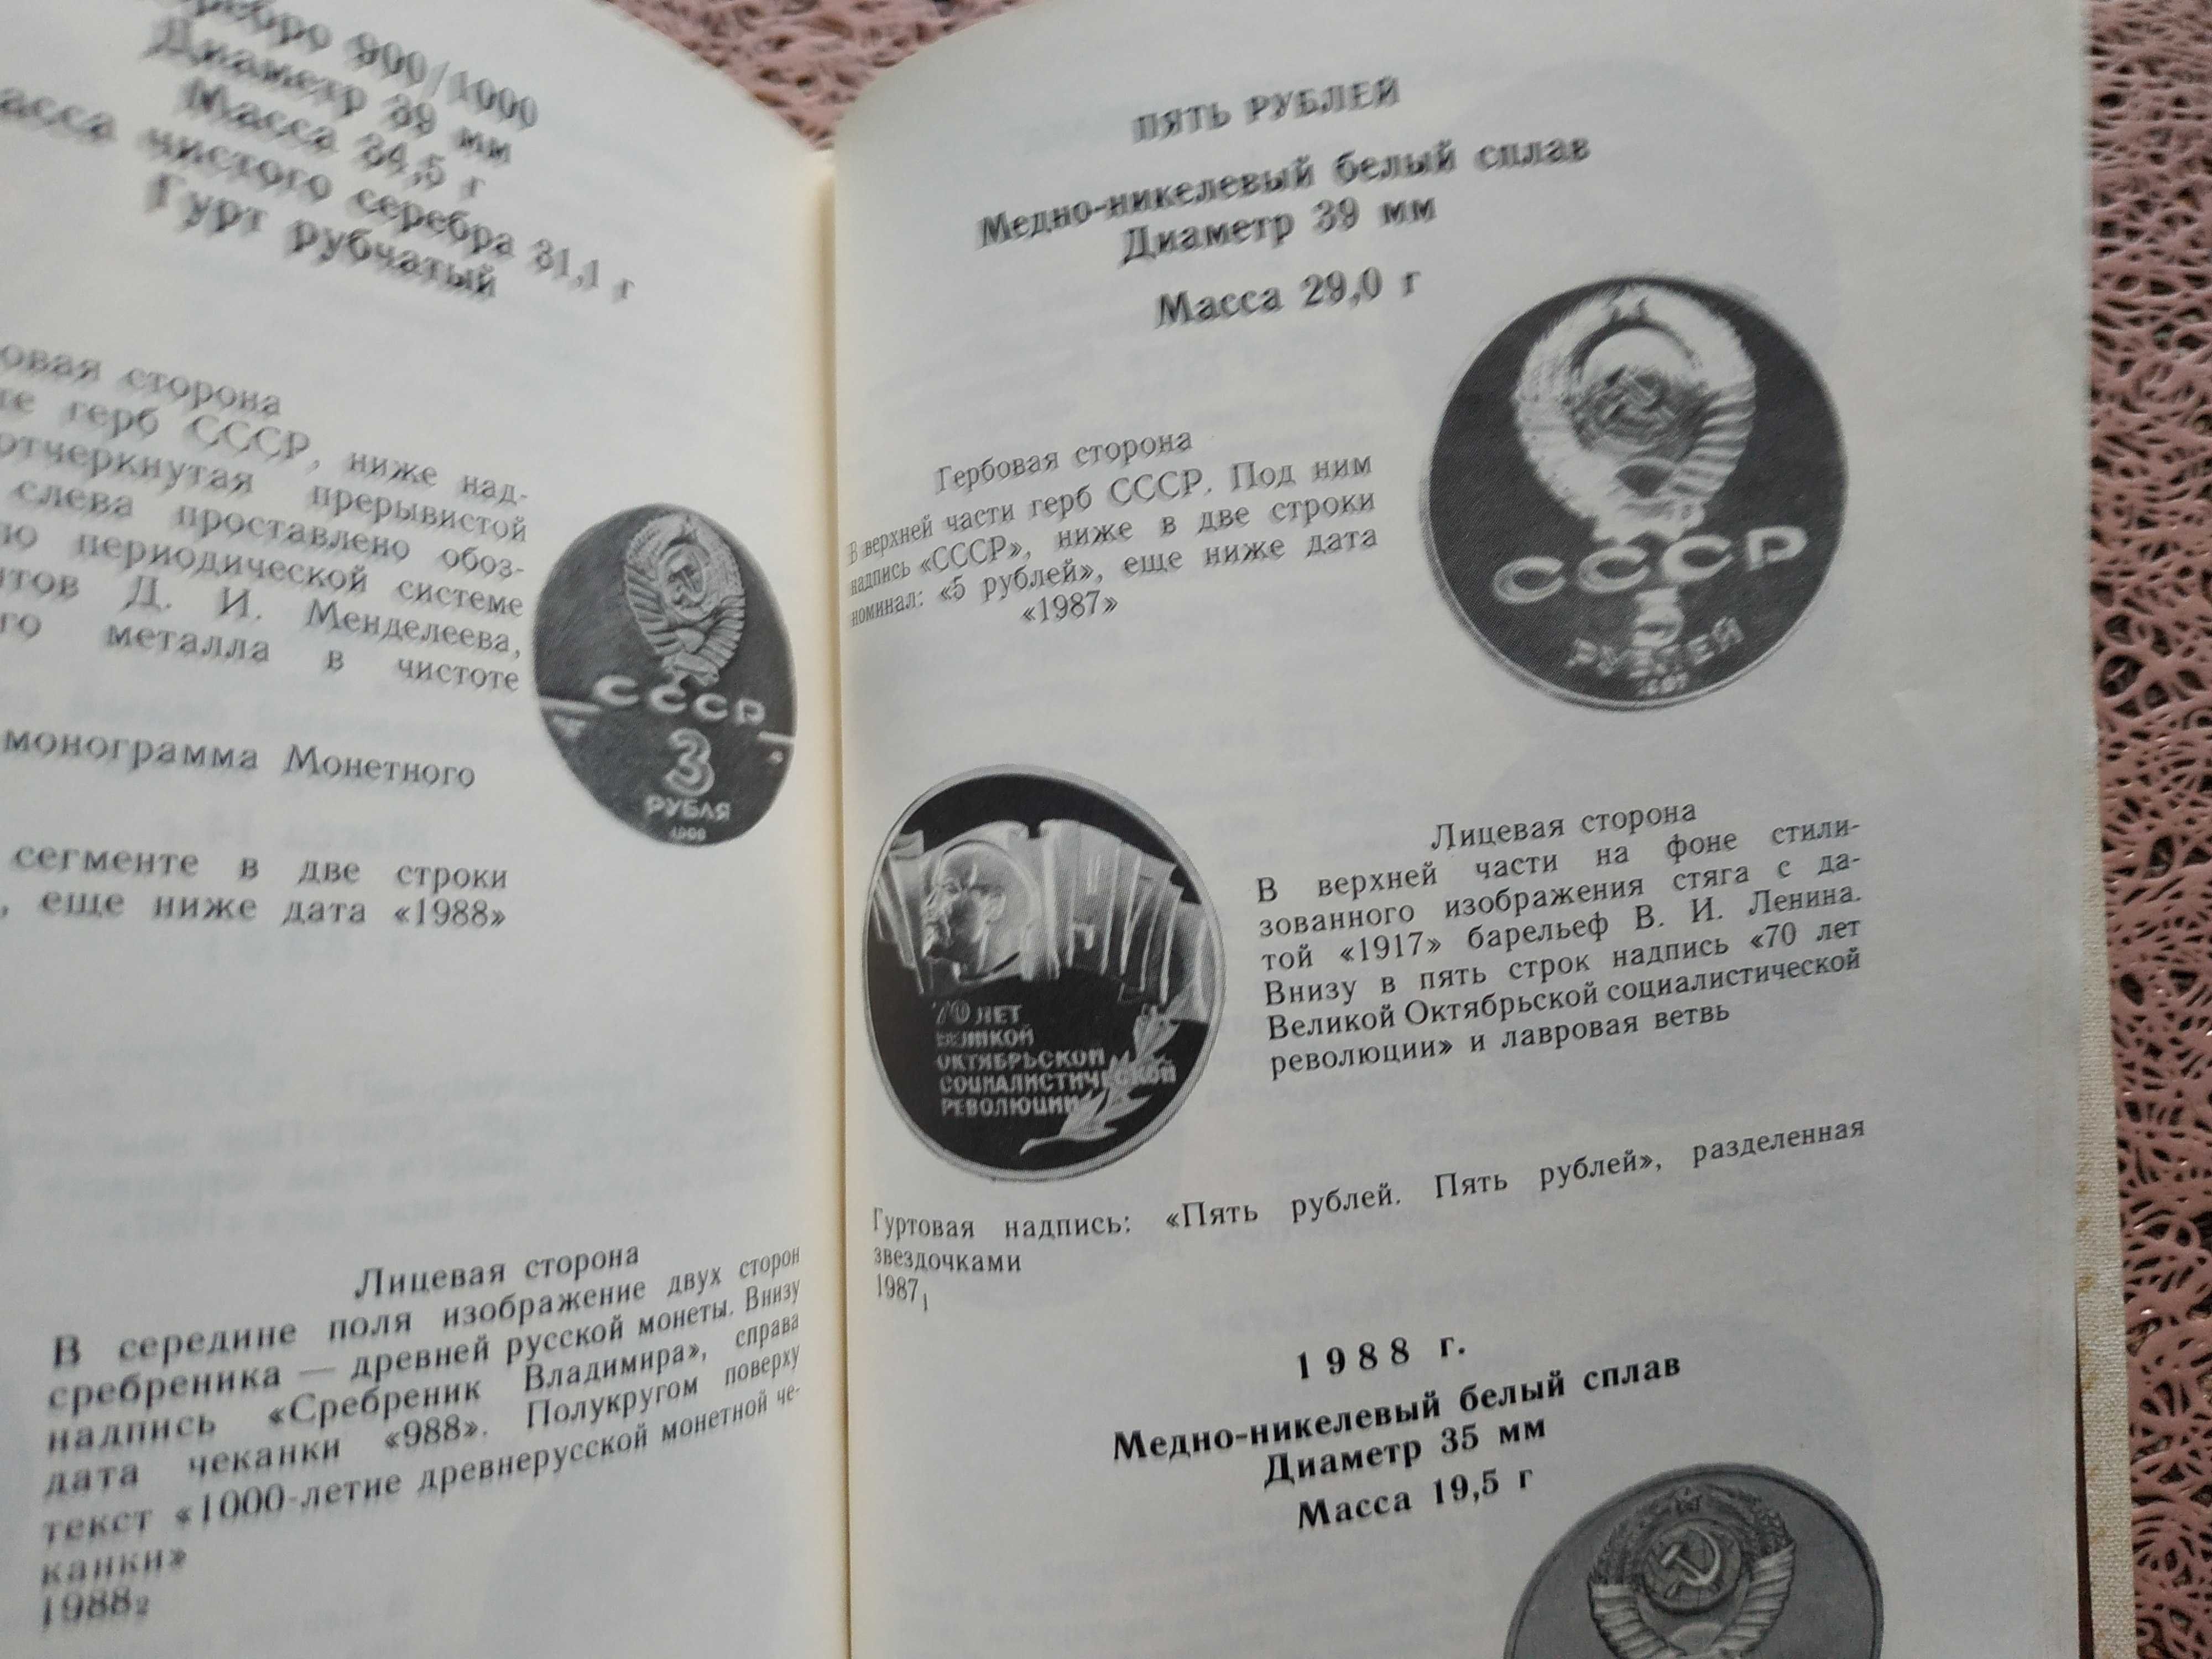 Книга. А. ЩЕЛОКОВ "МОНЕТЫ СССР". 1989 Г.